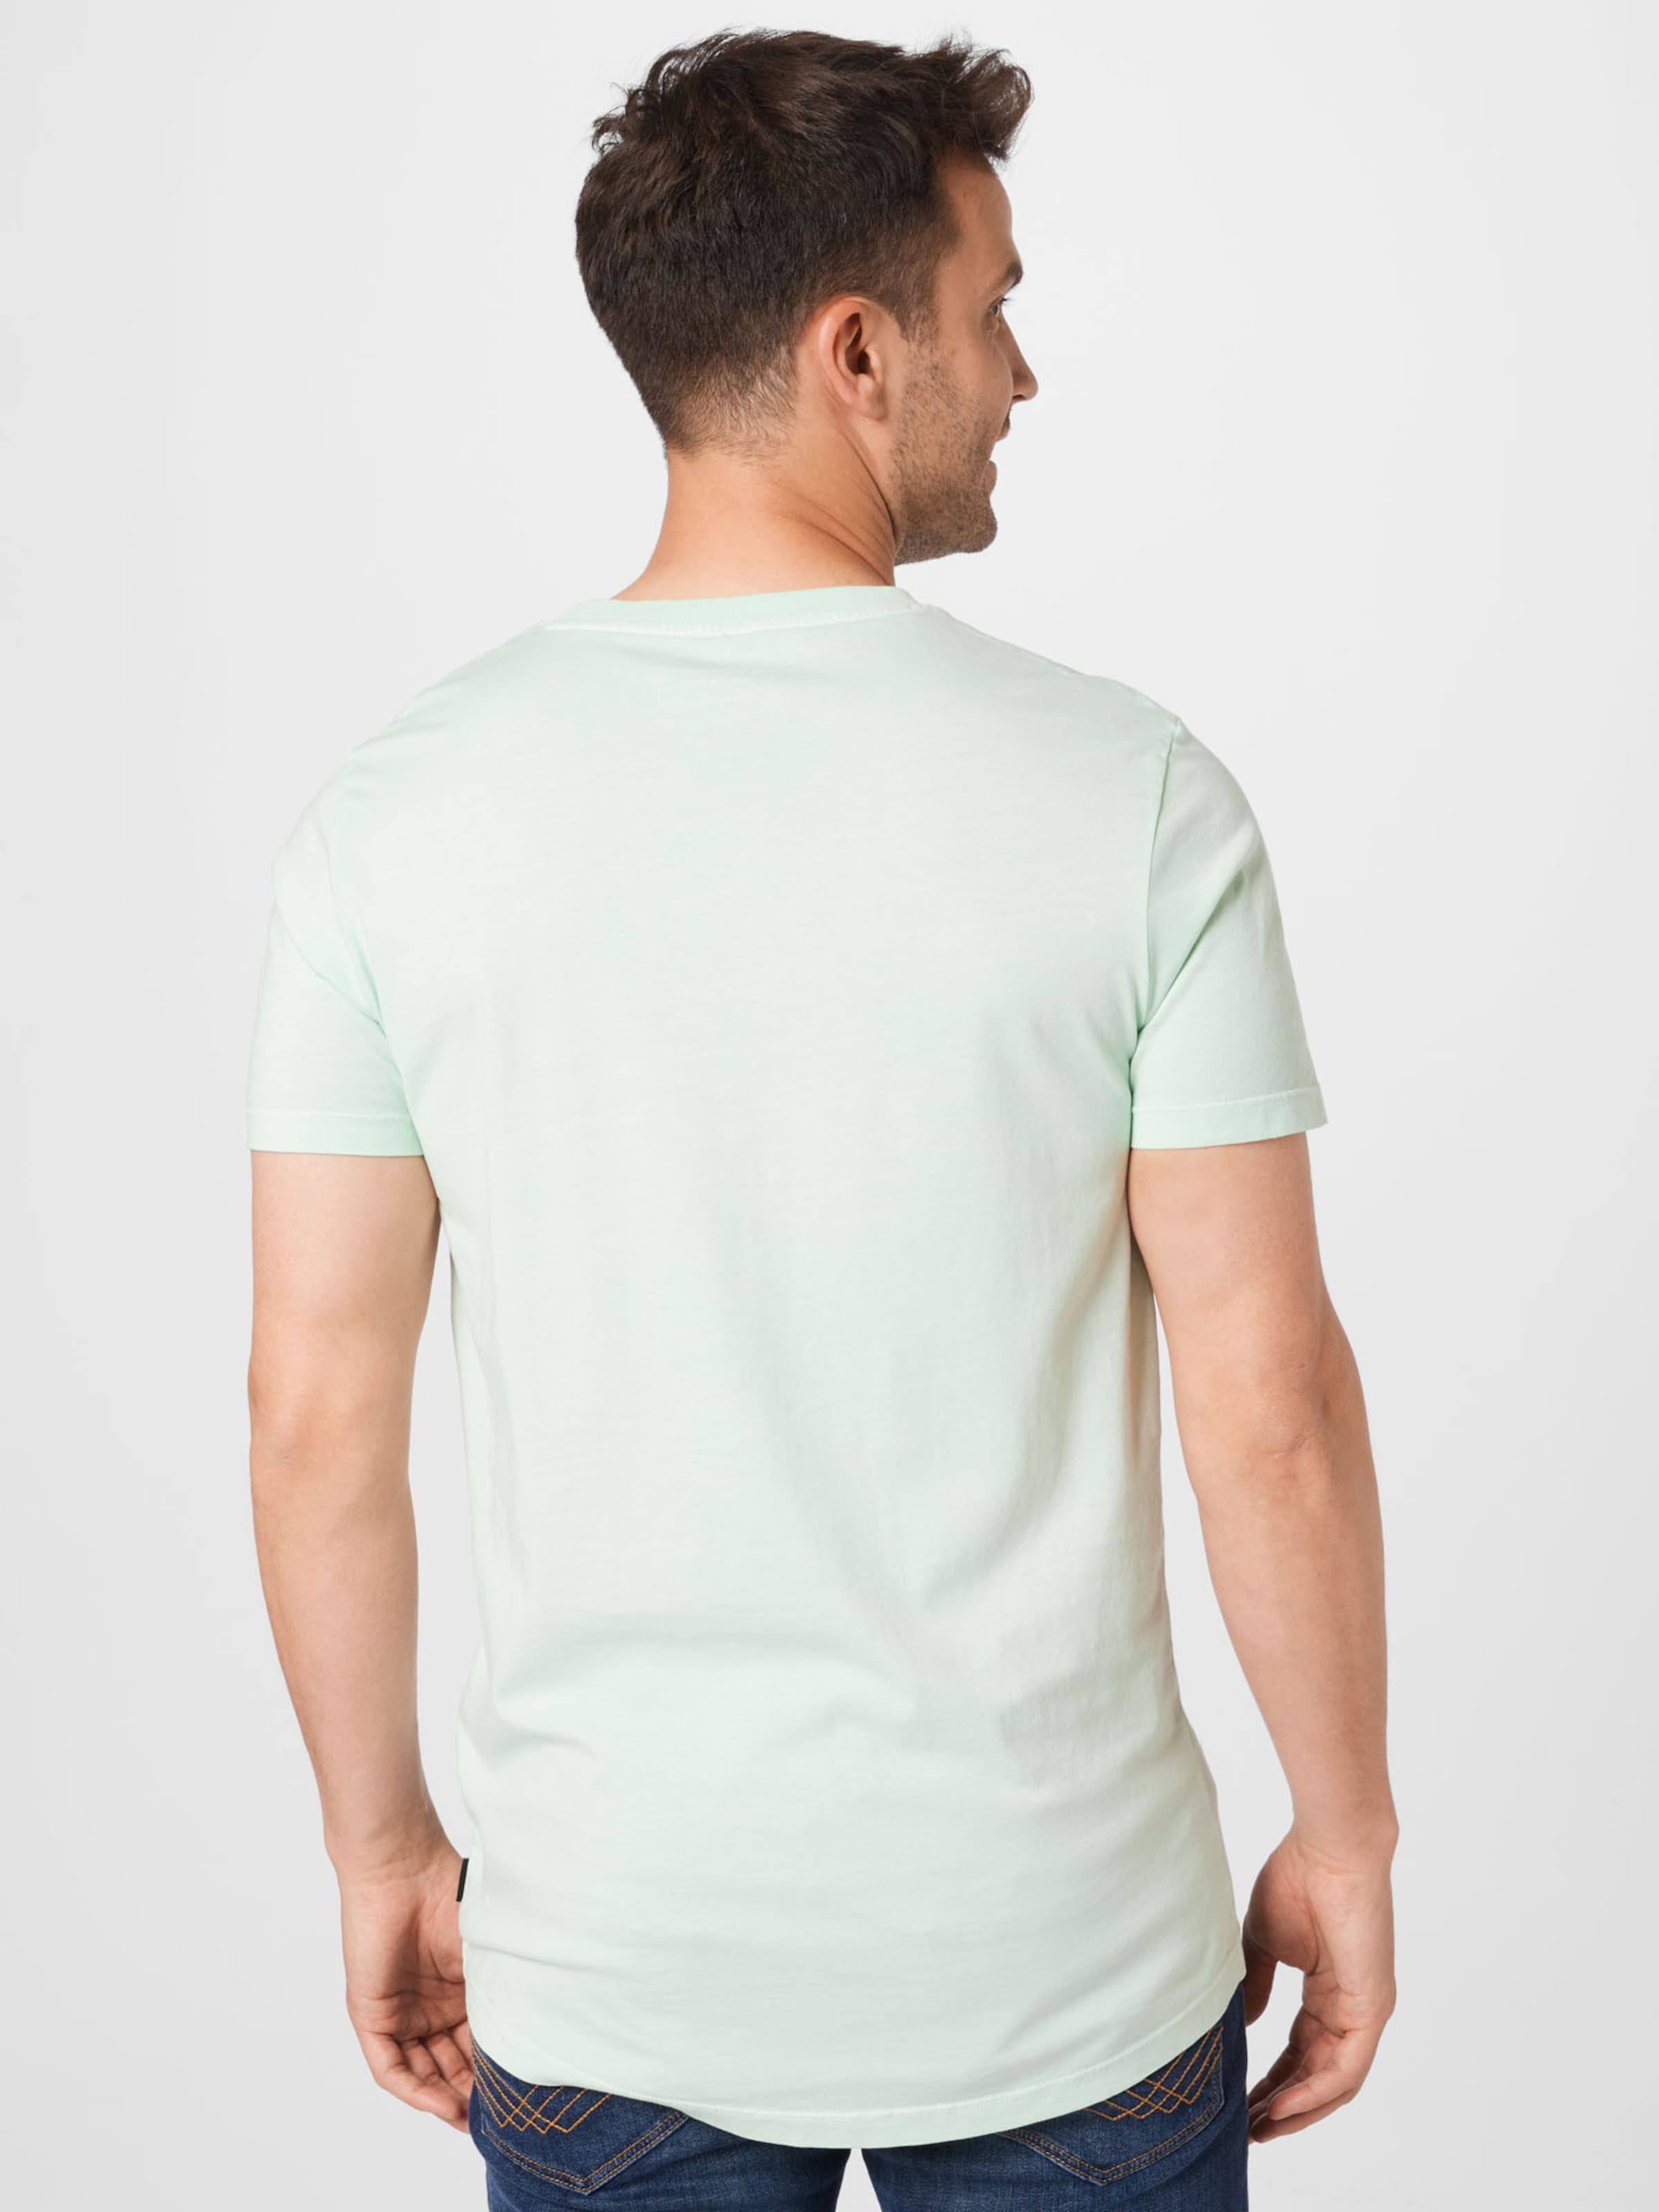 Männer Shirts TOM TAILOR DENIM T-Shirt in Pastellgrün - VT03786